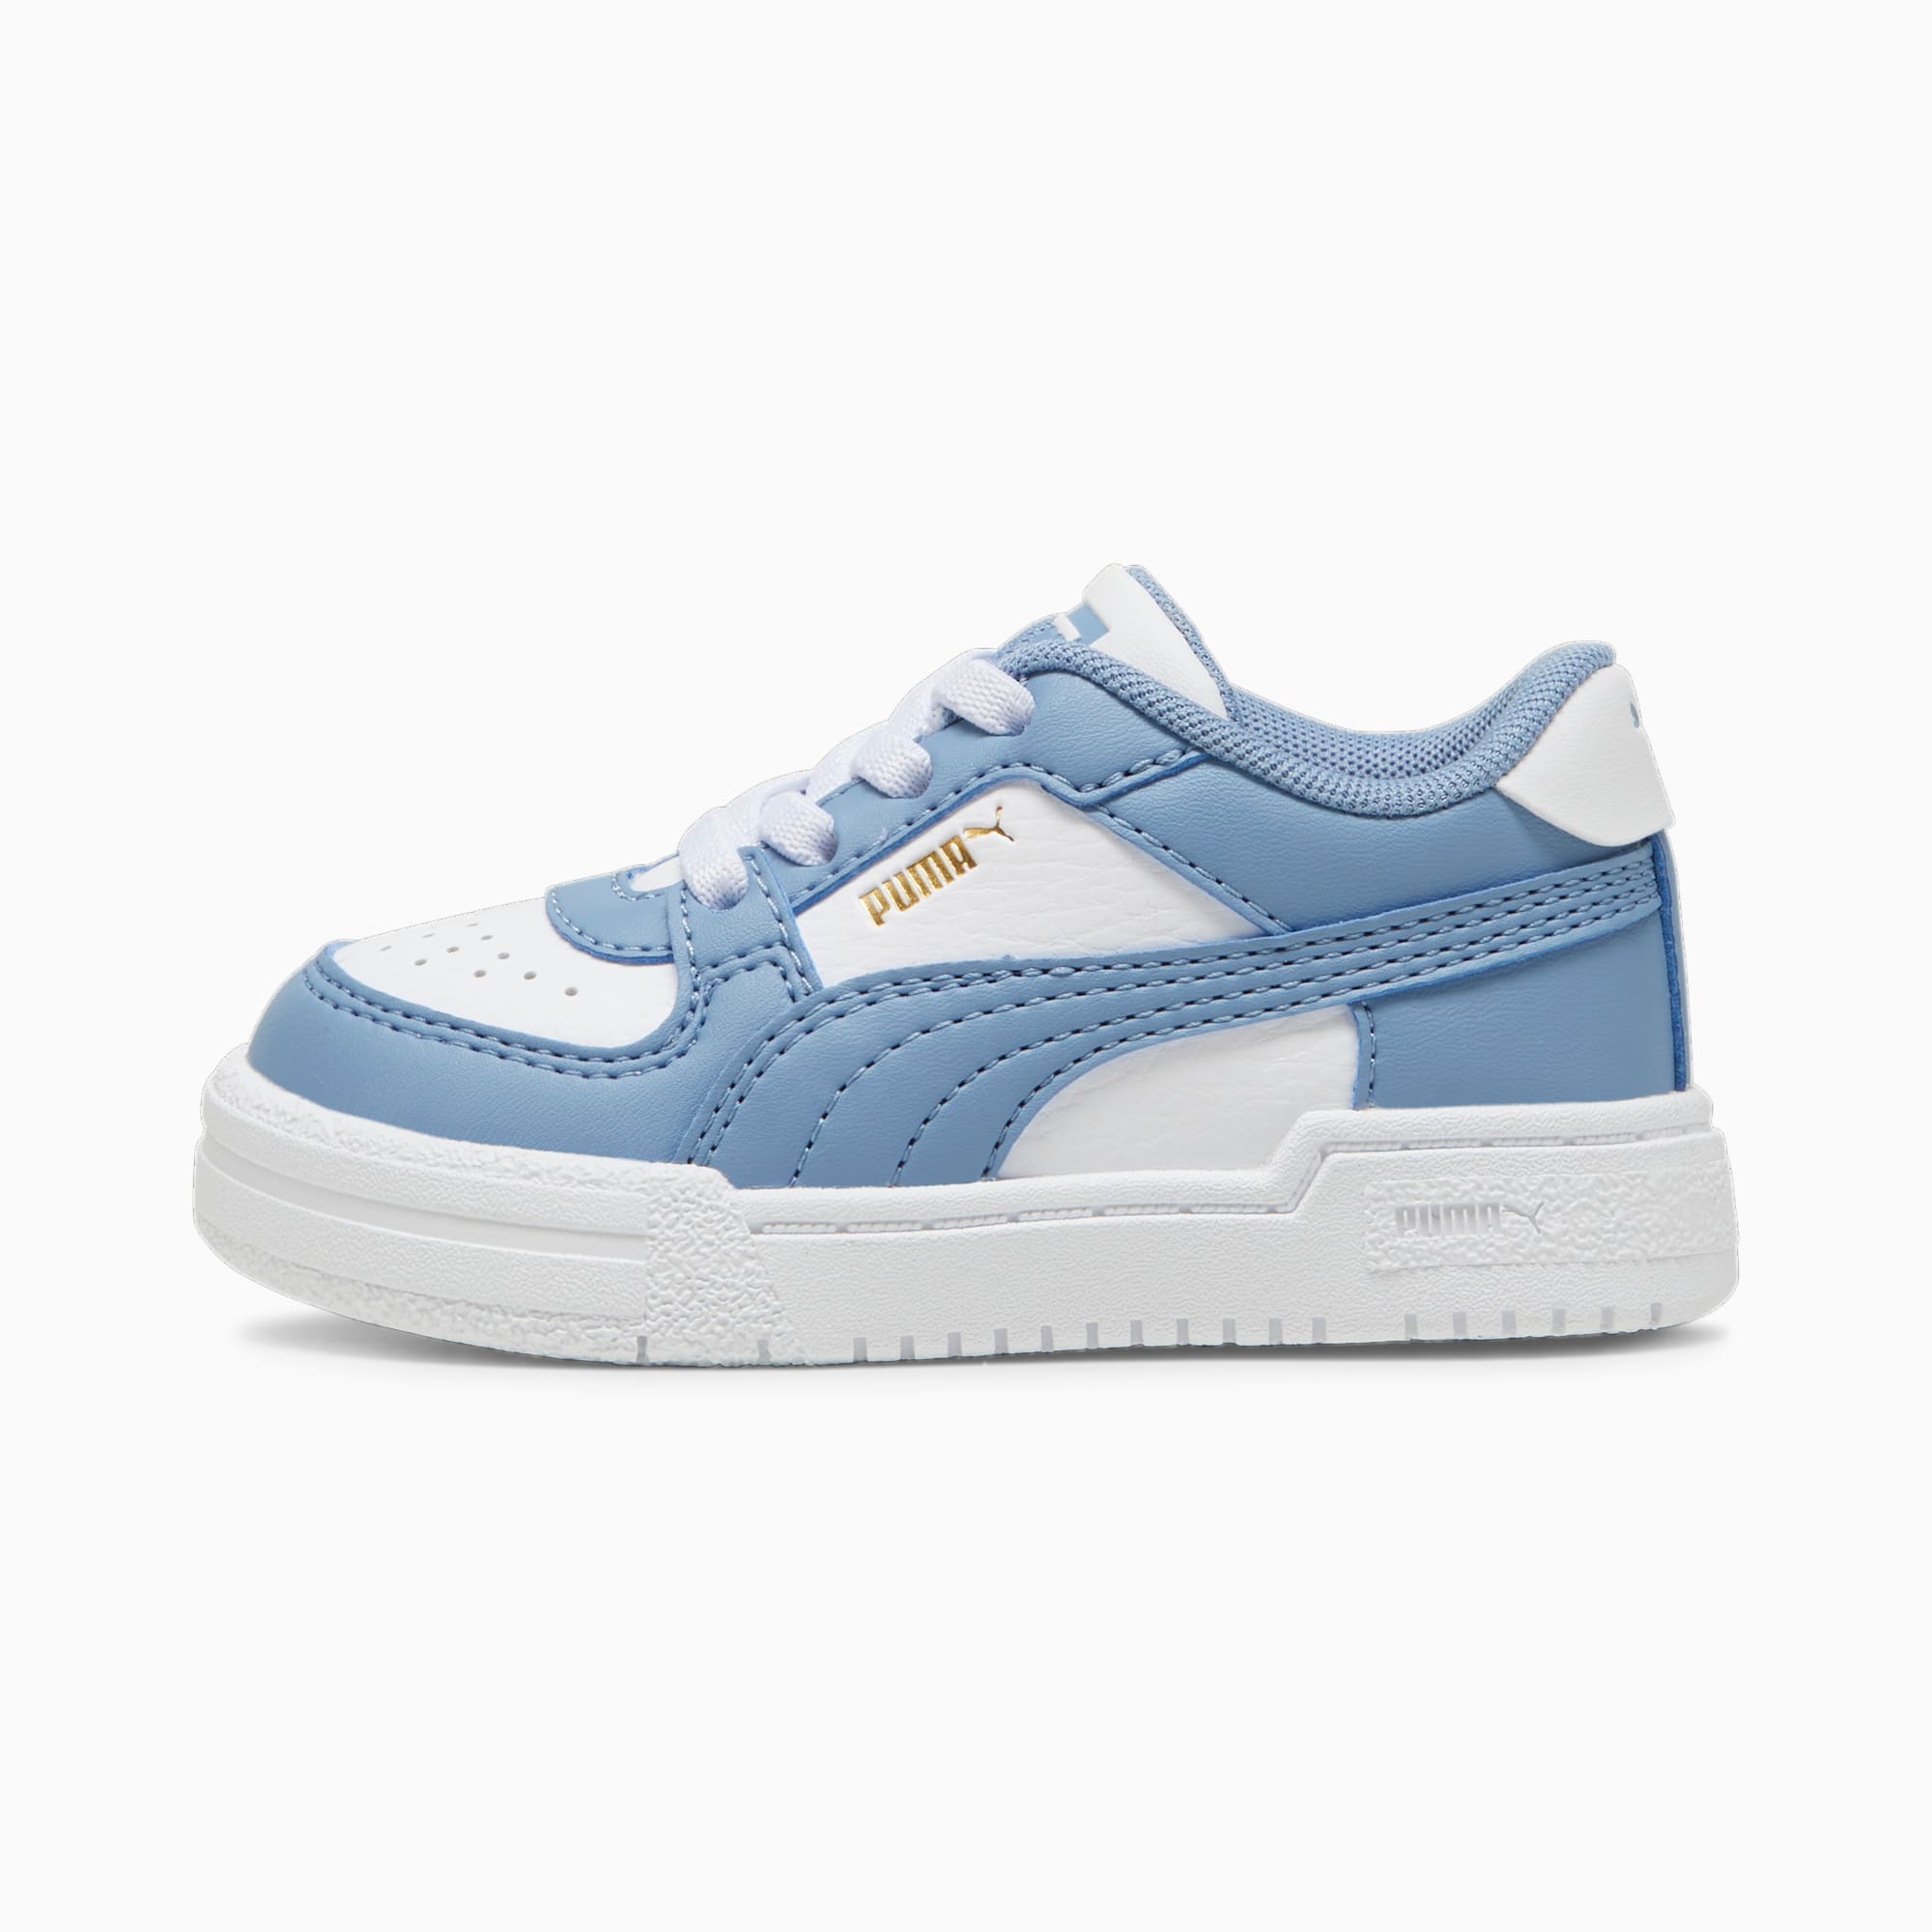 PUMA Ca Pro Classic AC Babies' Trainers, White/Zen Blue, Size 19, Shoes